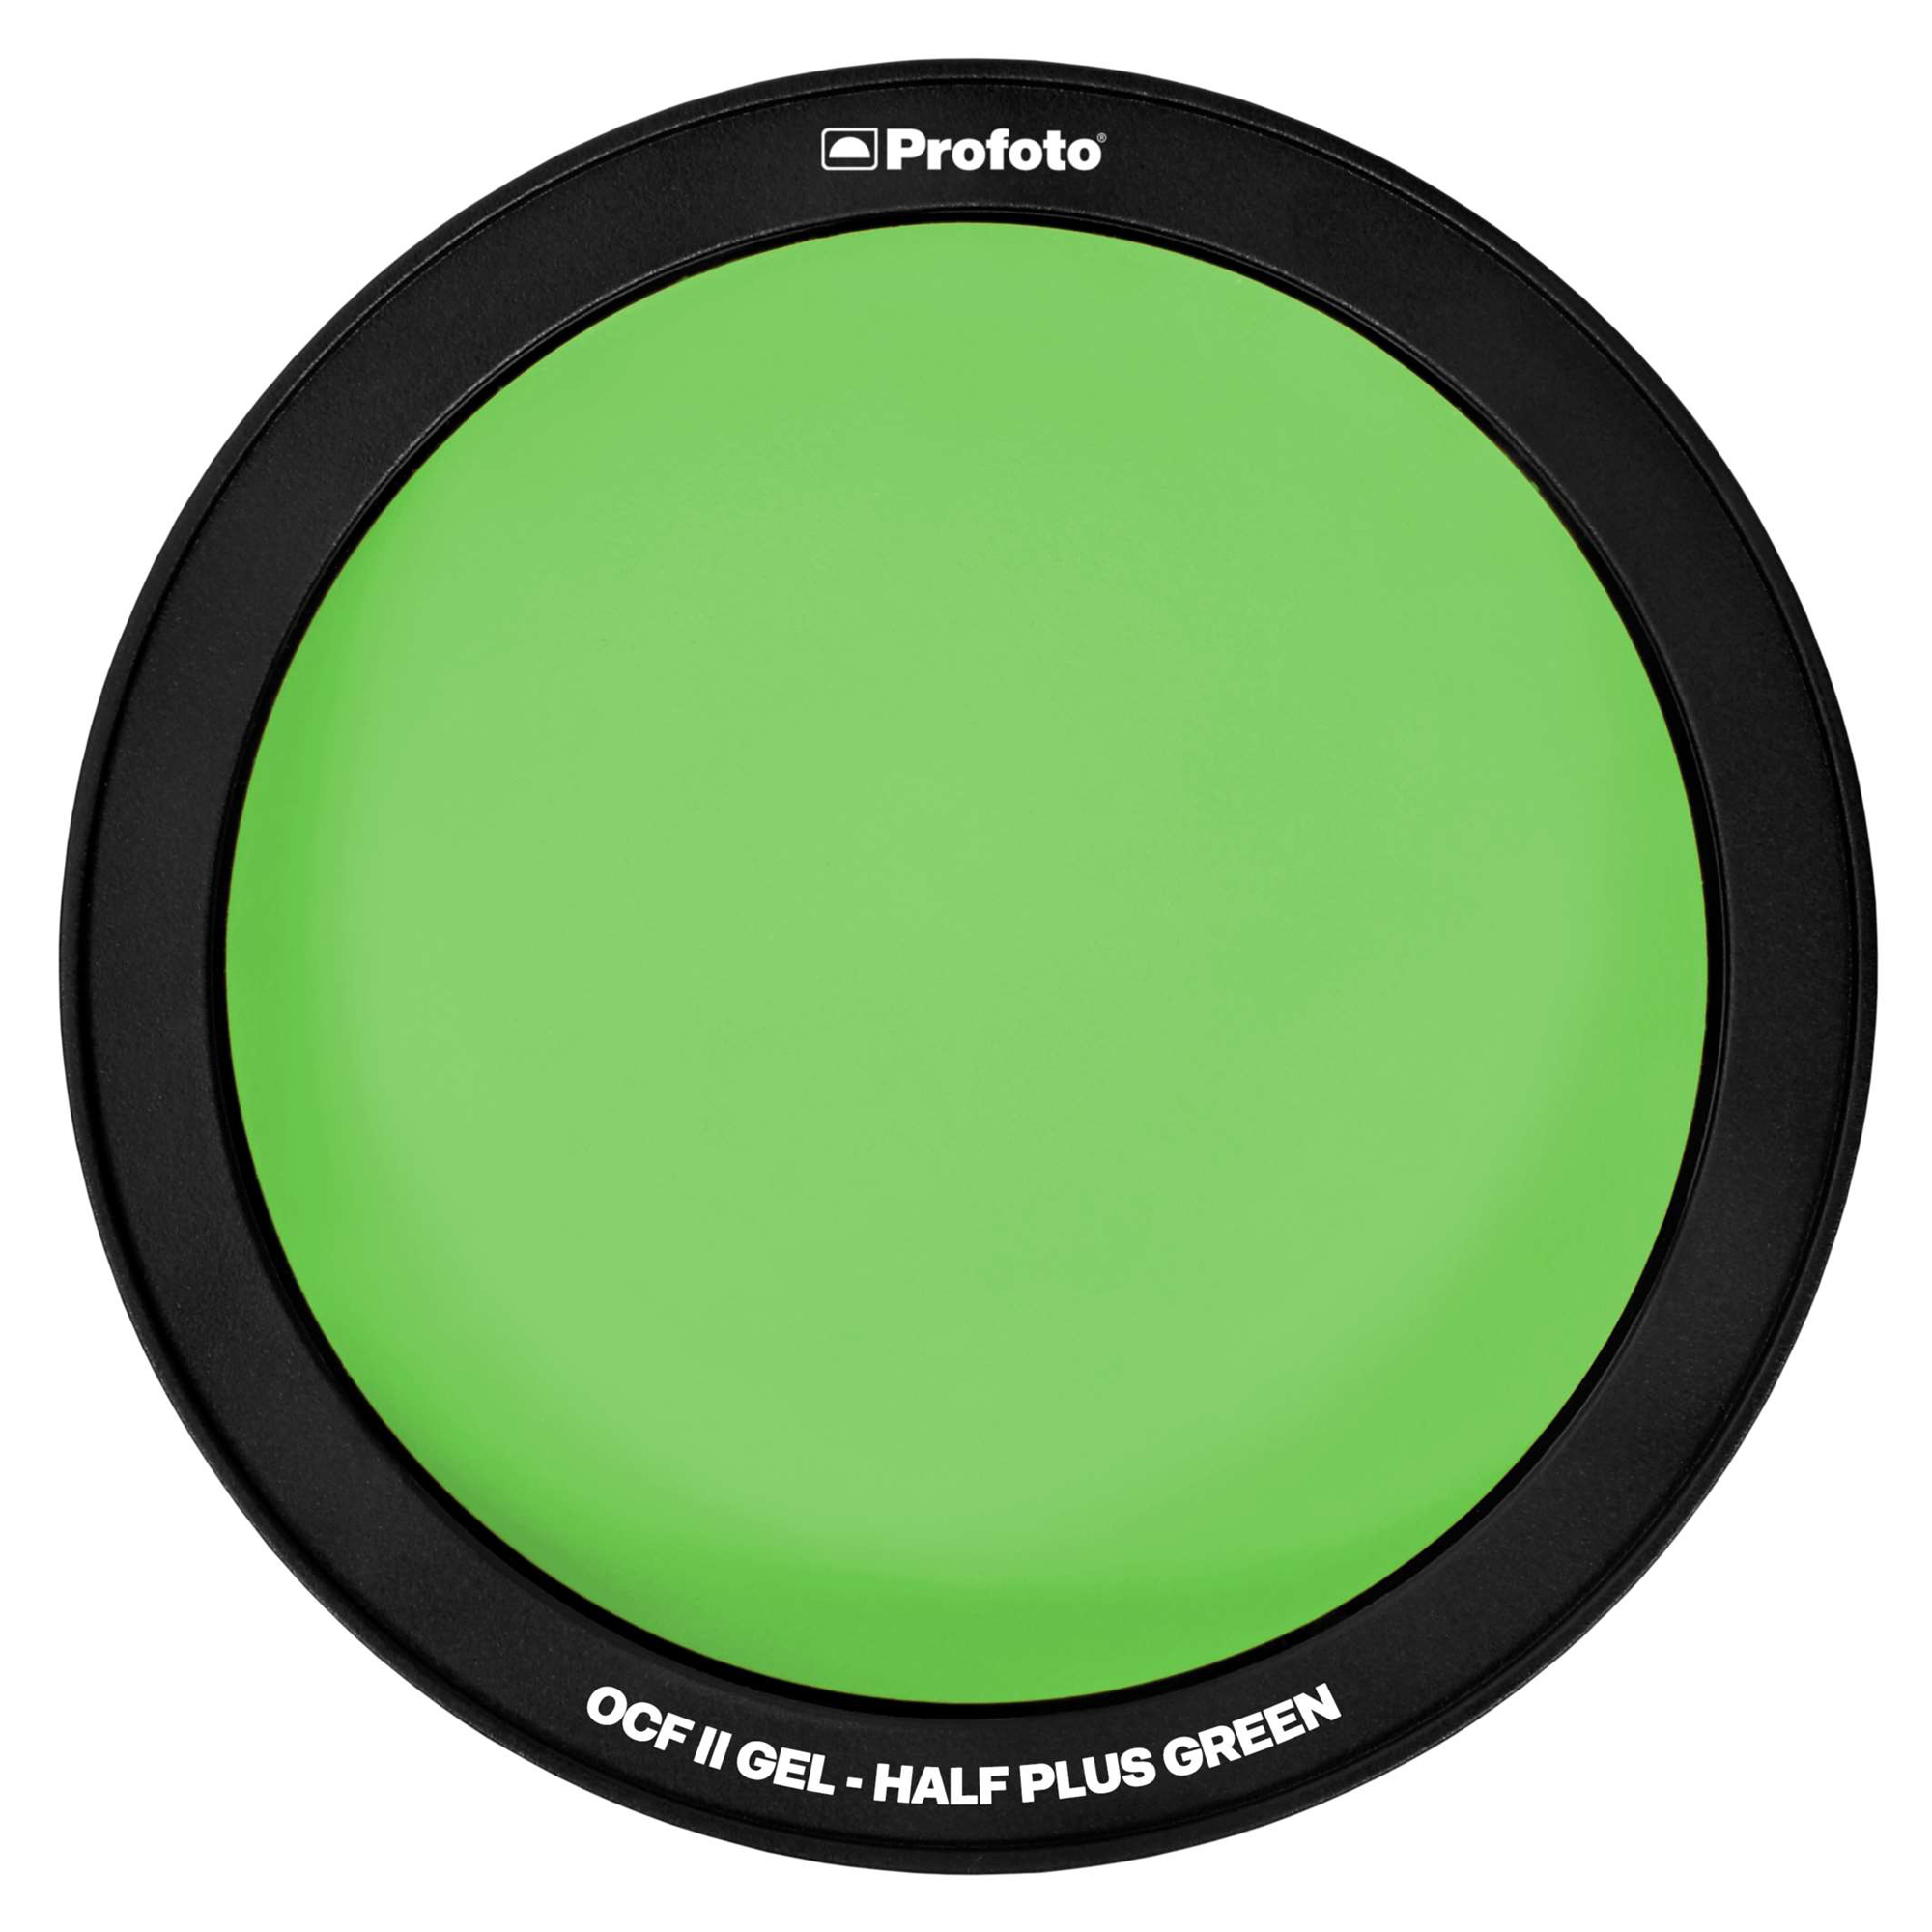 Profoto OCF II Gel - Half Plus Green / magnetische Farbfolie